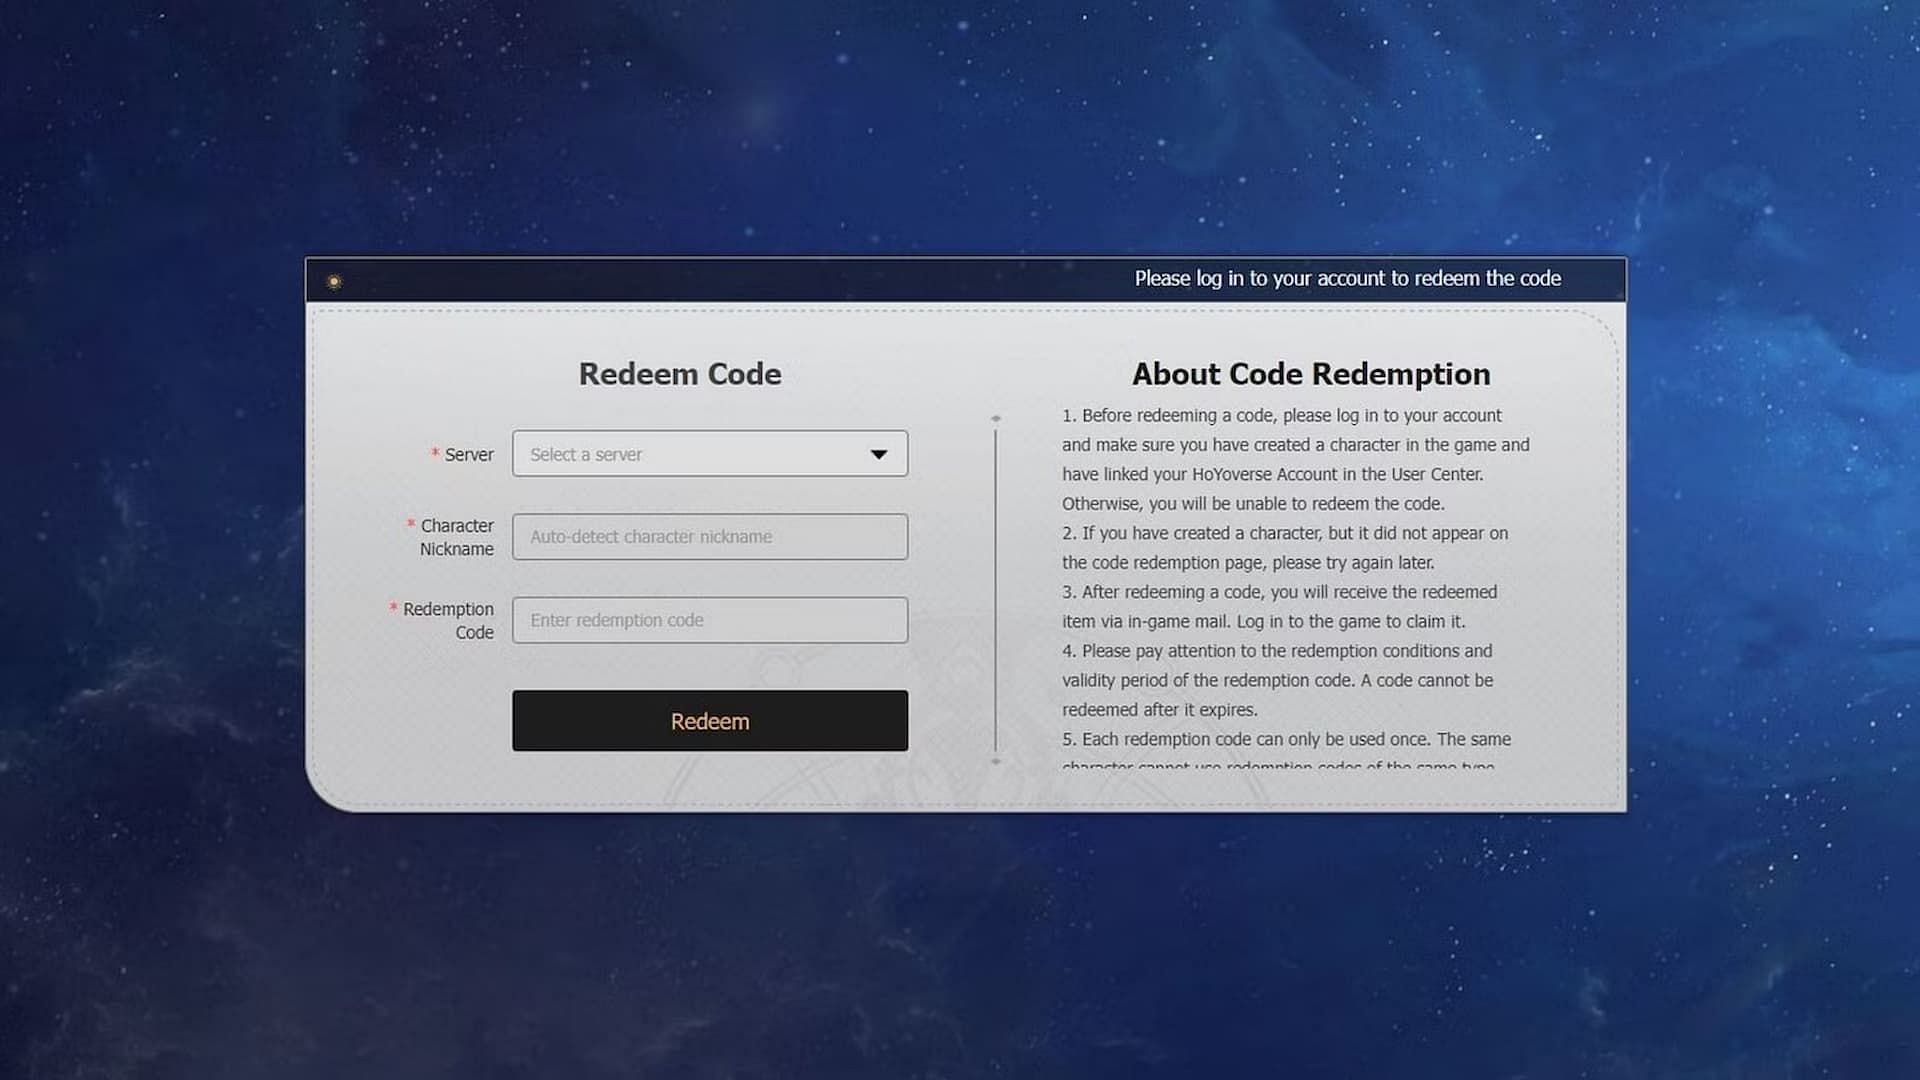 Code redemption via an external website. (Image via HoYoverse)